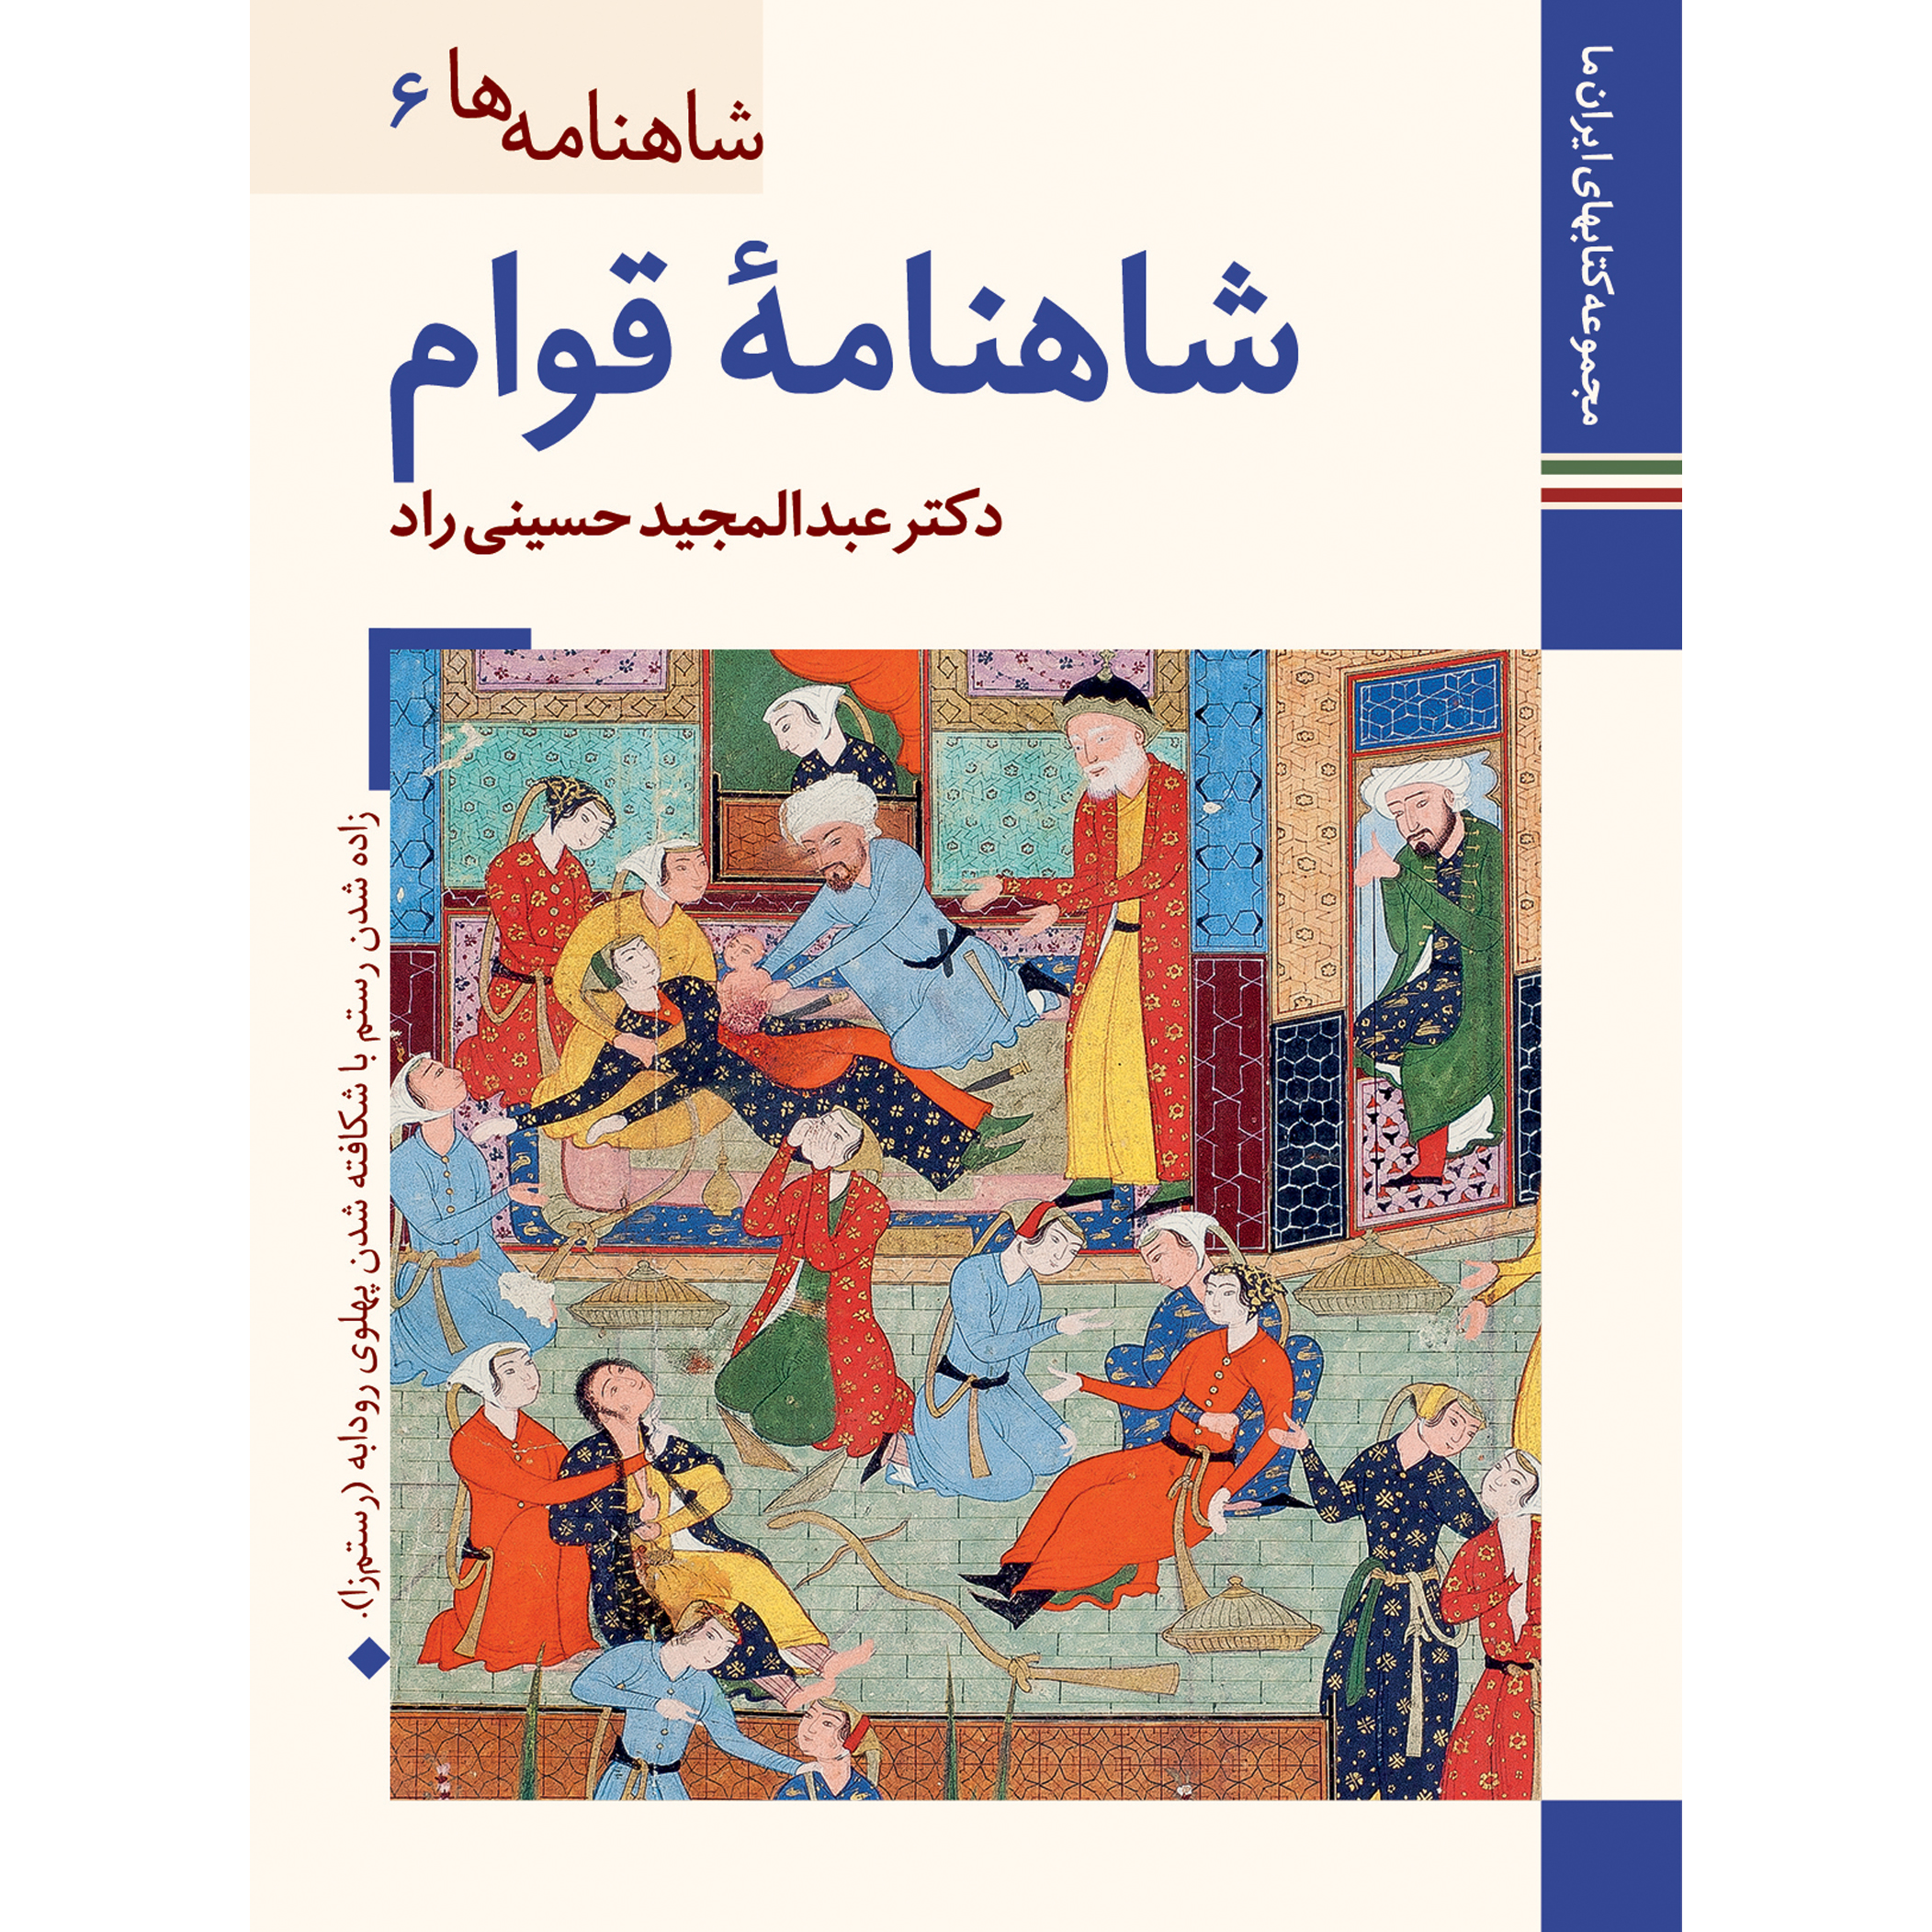 کتاب شاهنامه ها شاهنامه قوام اثر عبدالمجید حسینی راد نشر زرین و سیمین